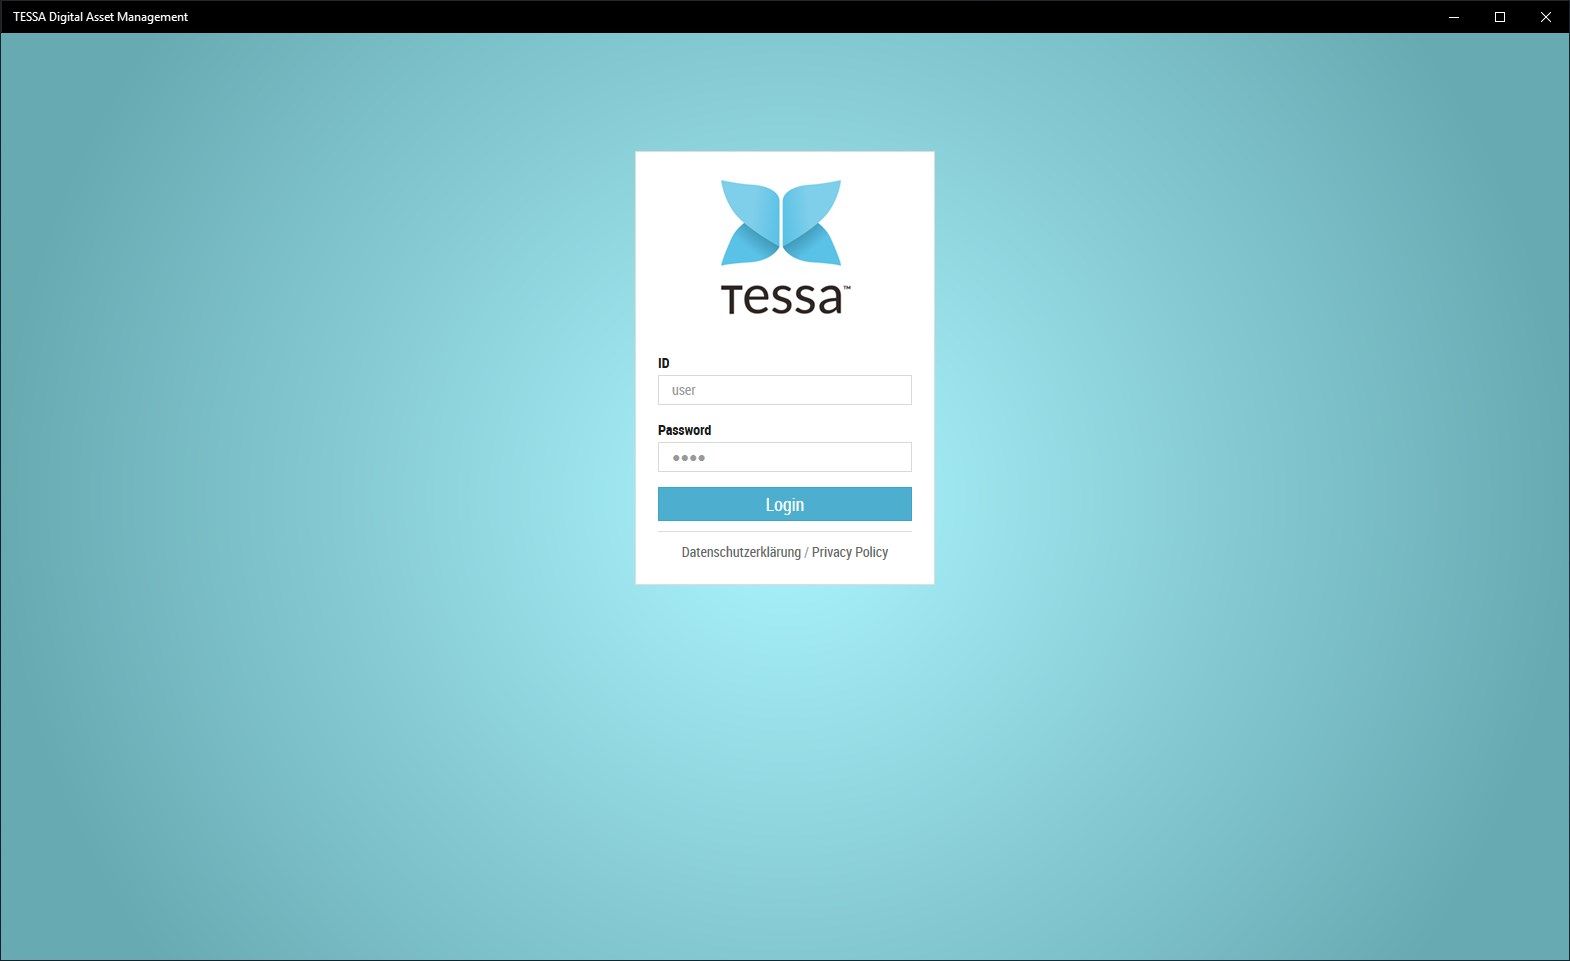 TESSA Digital Asset Management